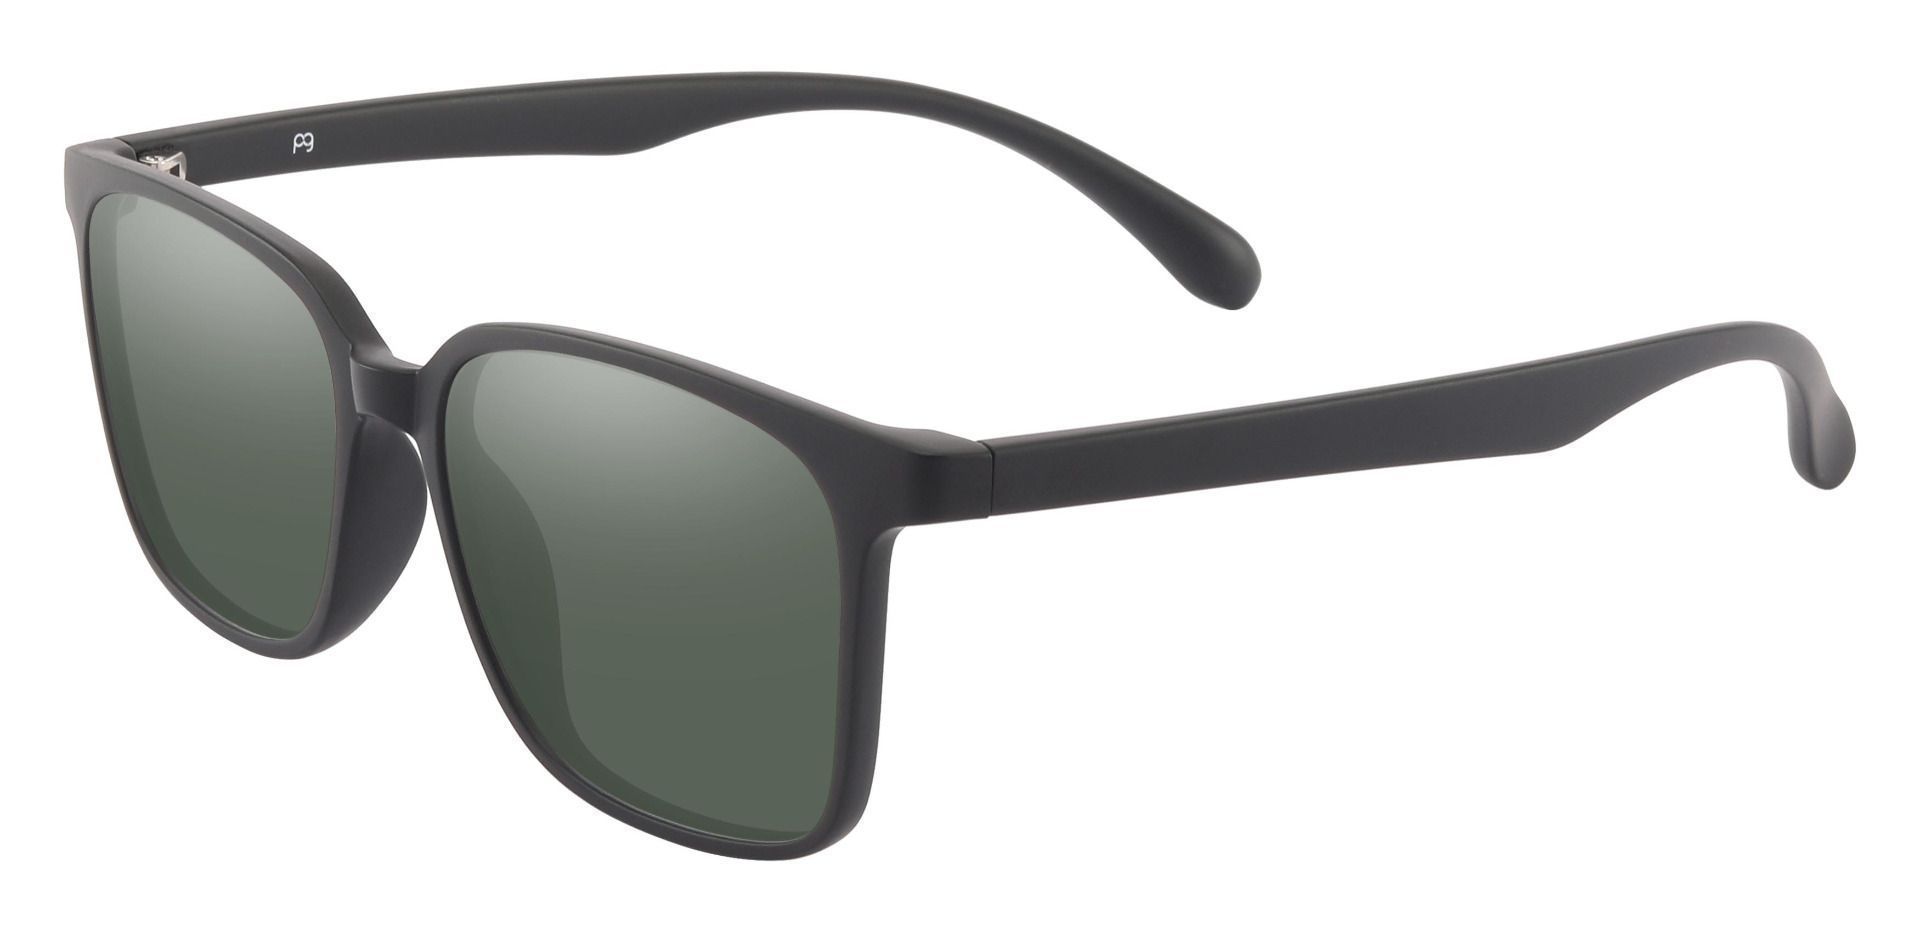 Kennett Square Prescription Sunglasses - Black Frame With Green Lenses